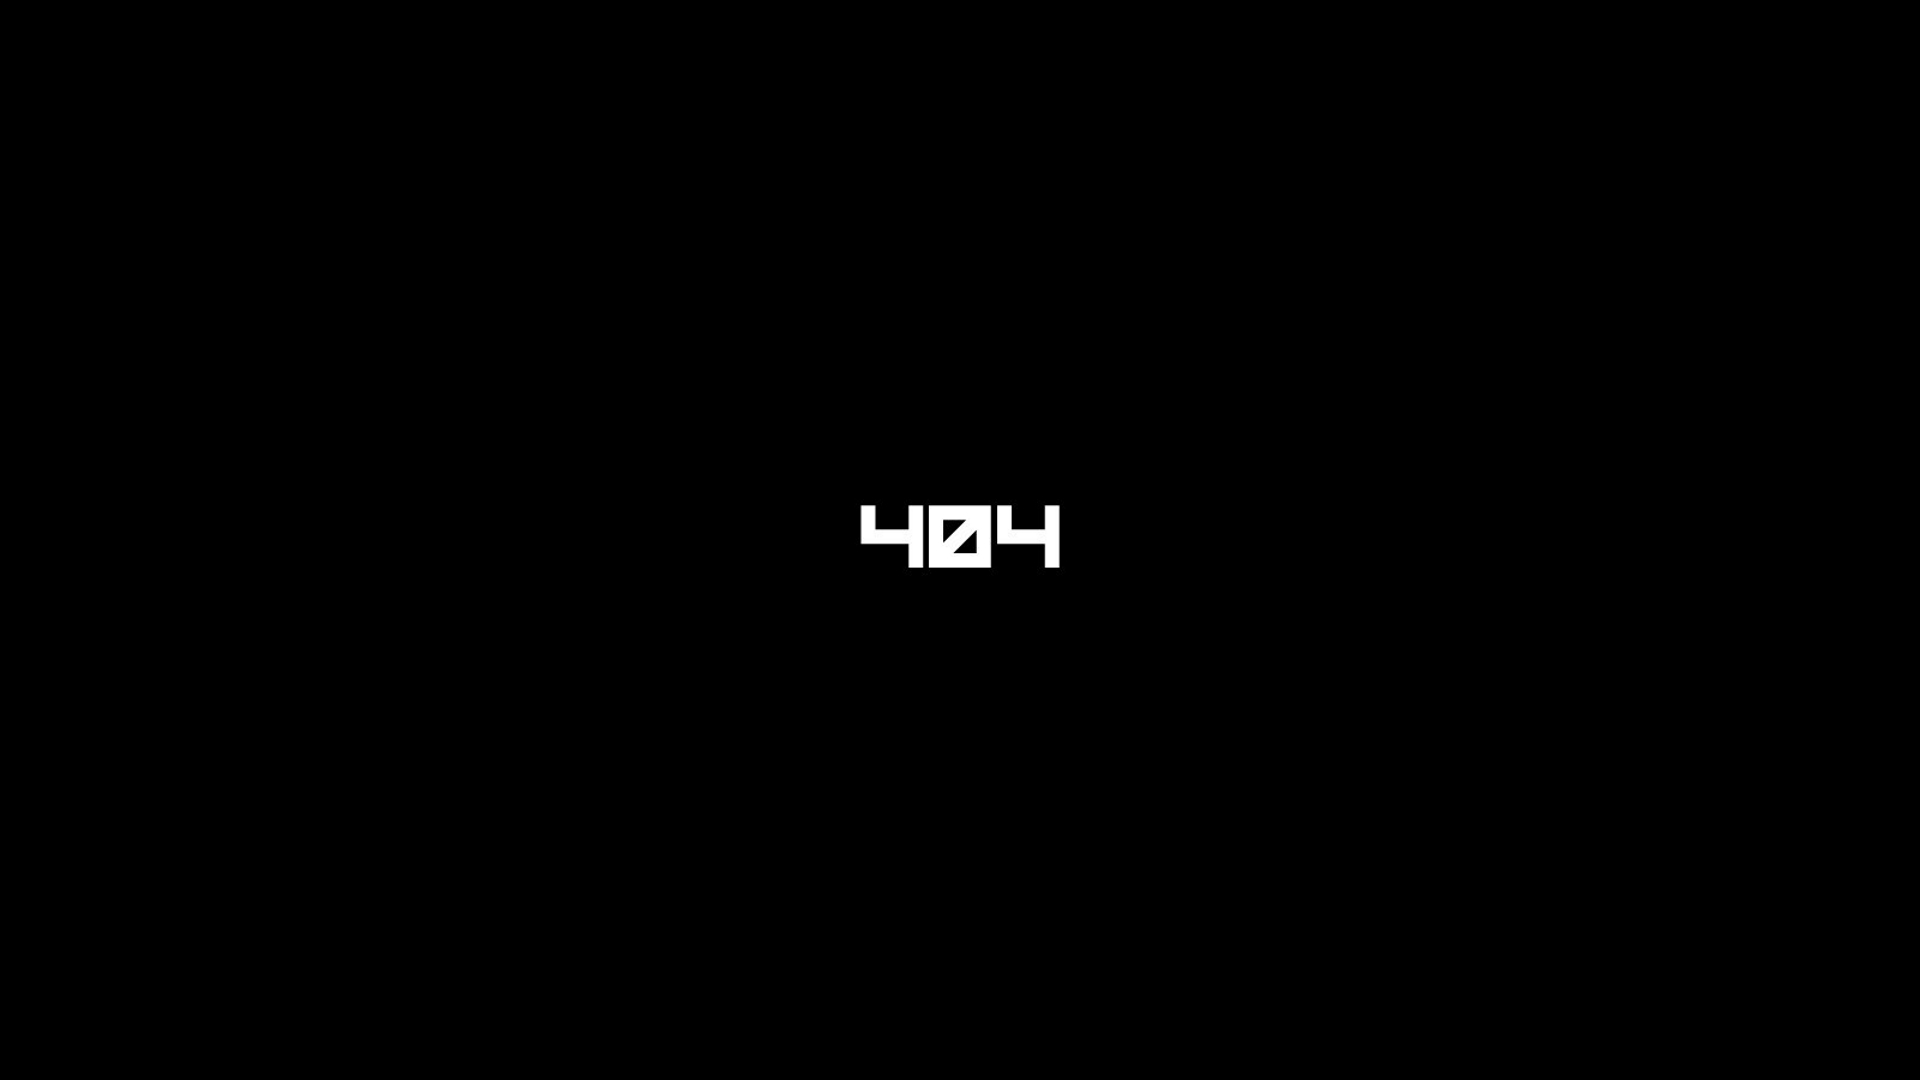 404 not found, technology, error, black & white, minimalist